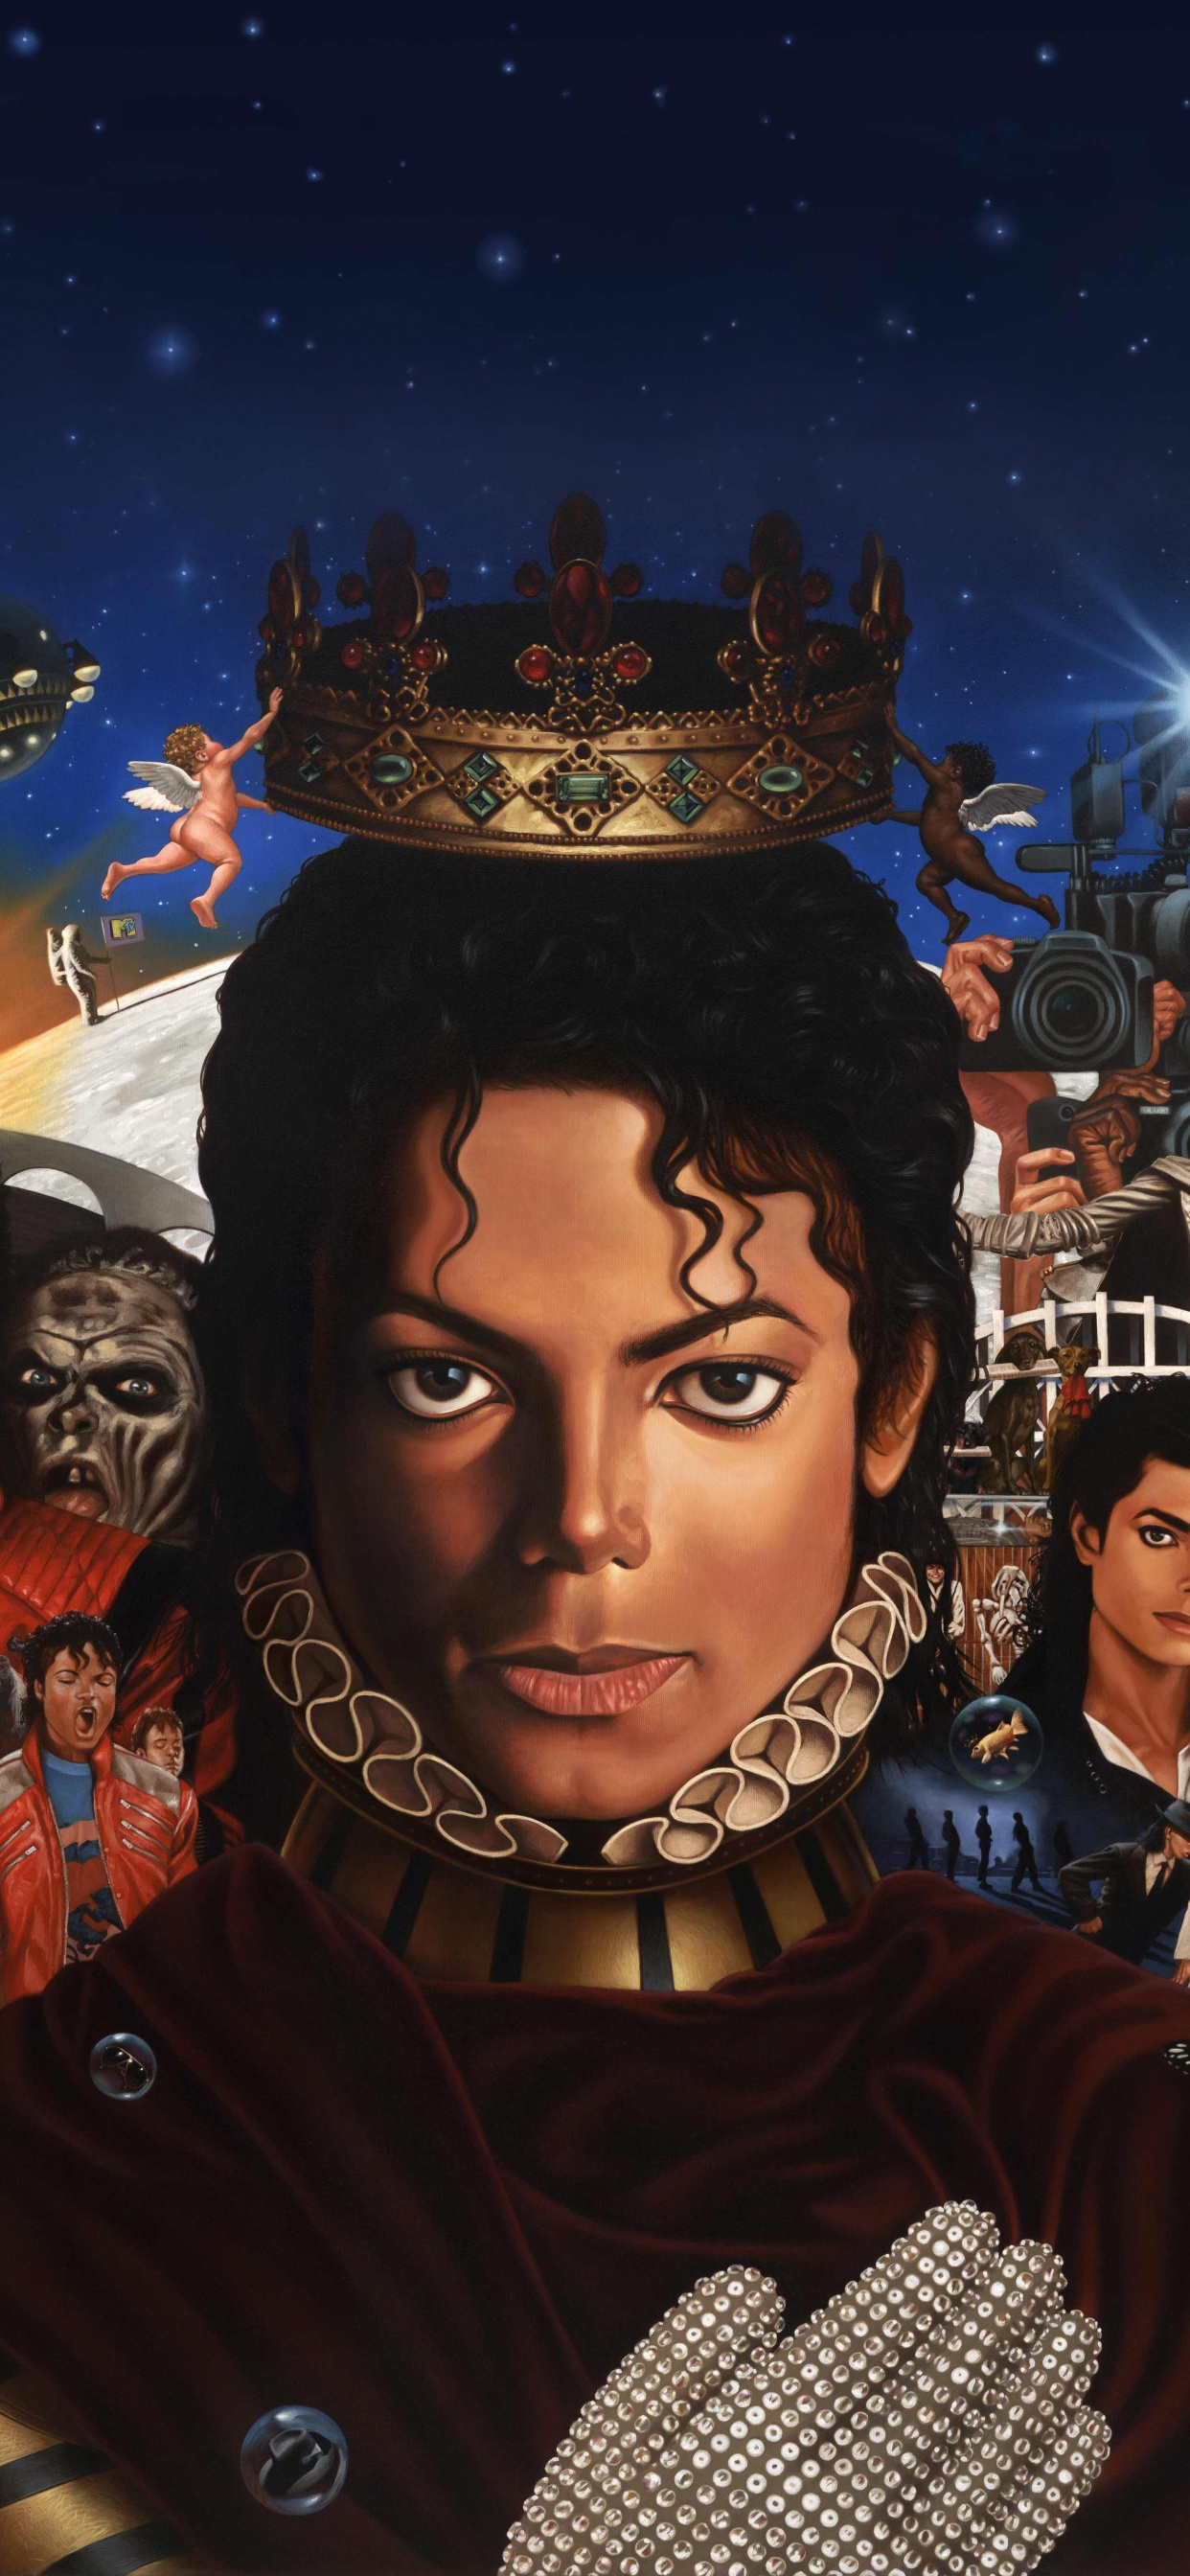 迈克尔*杰克逊, 迈克尔, 专辑, 艺术, 空间 壁纸 1242x2688 允许